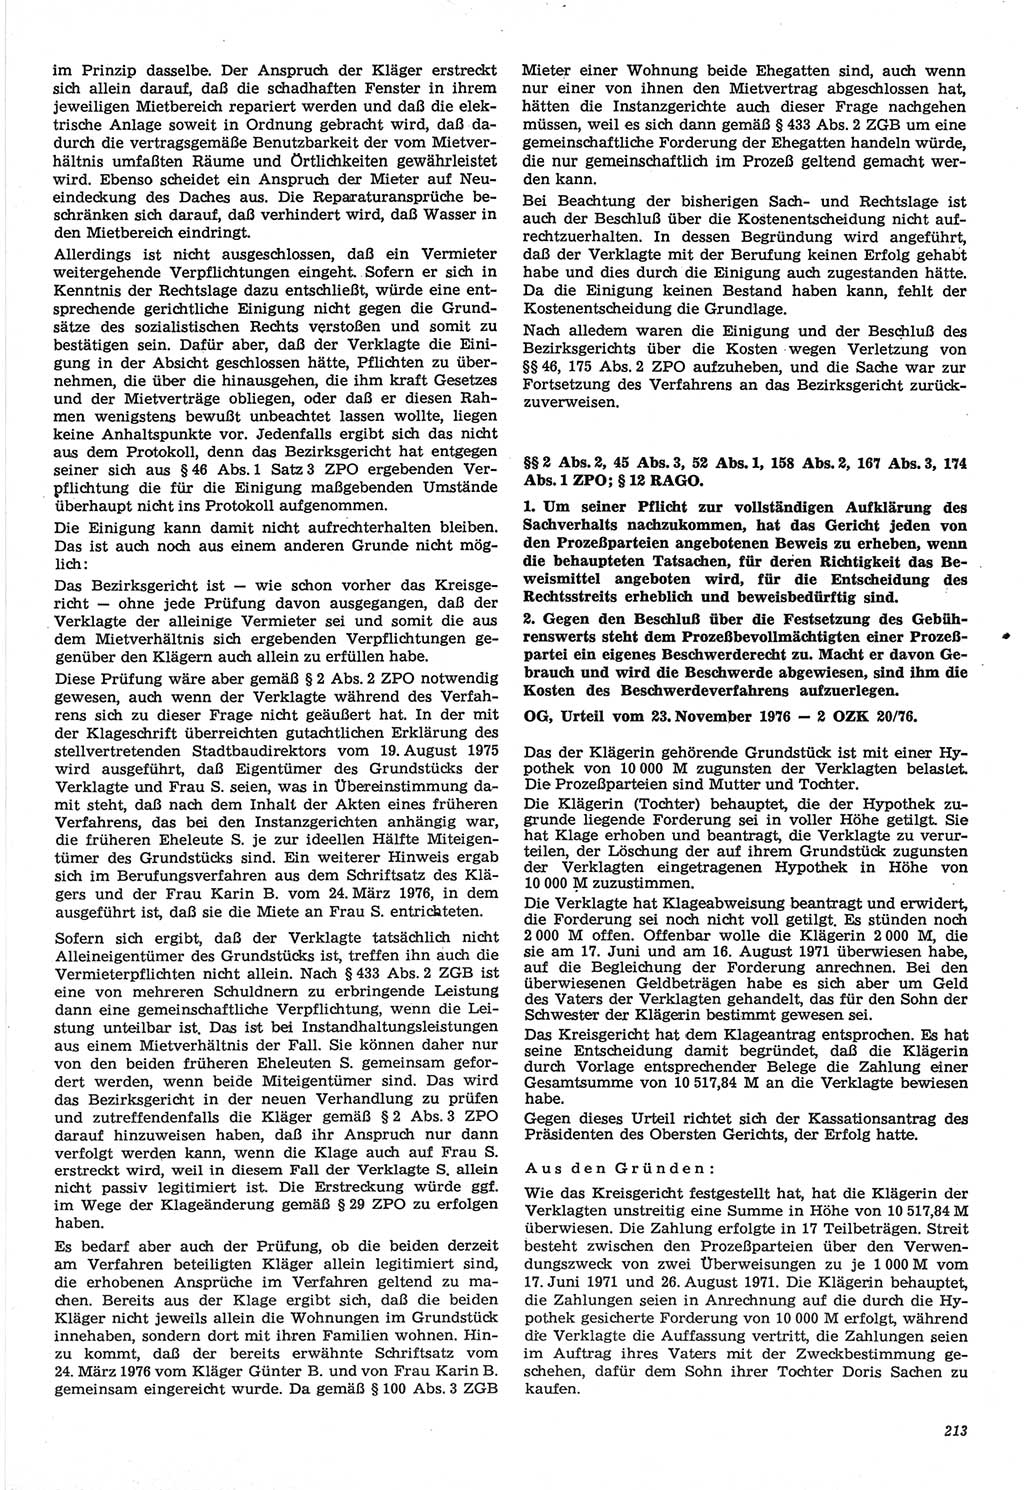 Neue Justiz (NJ), Zeitschrift für Recht und Rechtswissenschaft-Zeitschrift, sozialistisches Recht und Gesetzlichkeit, 31. Jahrgang 1977, Seite 213 (NJ DDR 1977, S. 213)